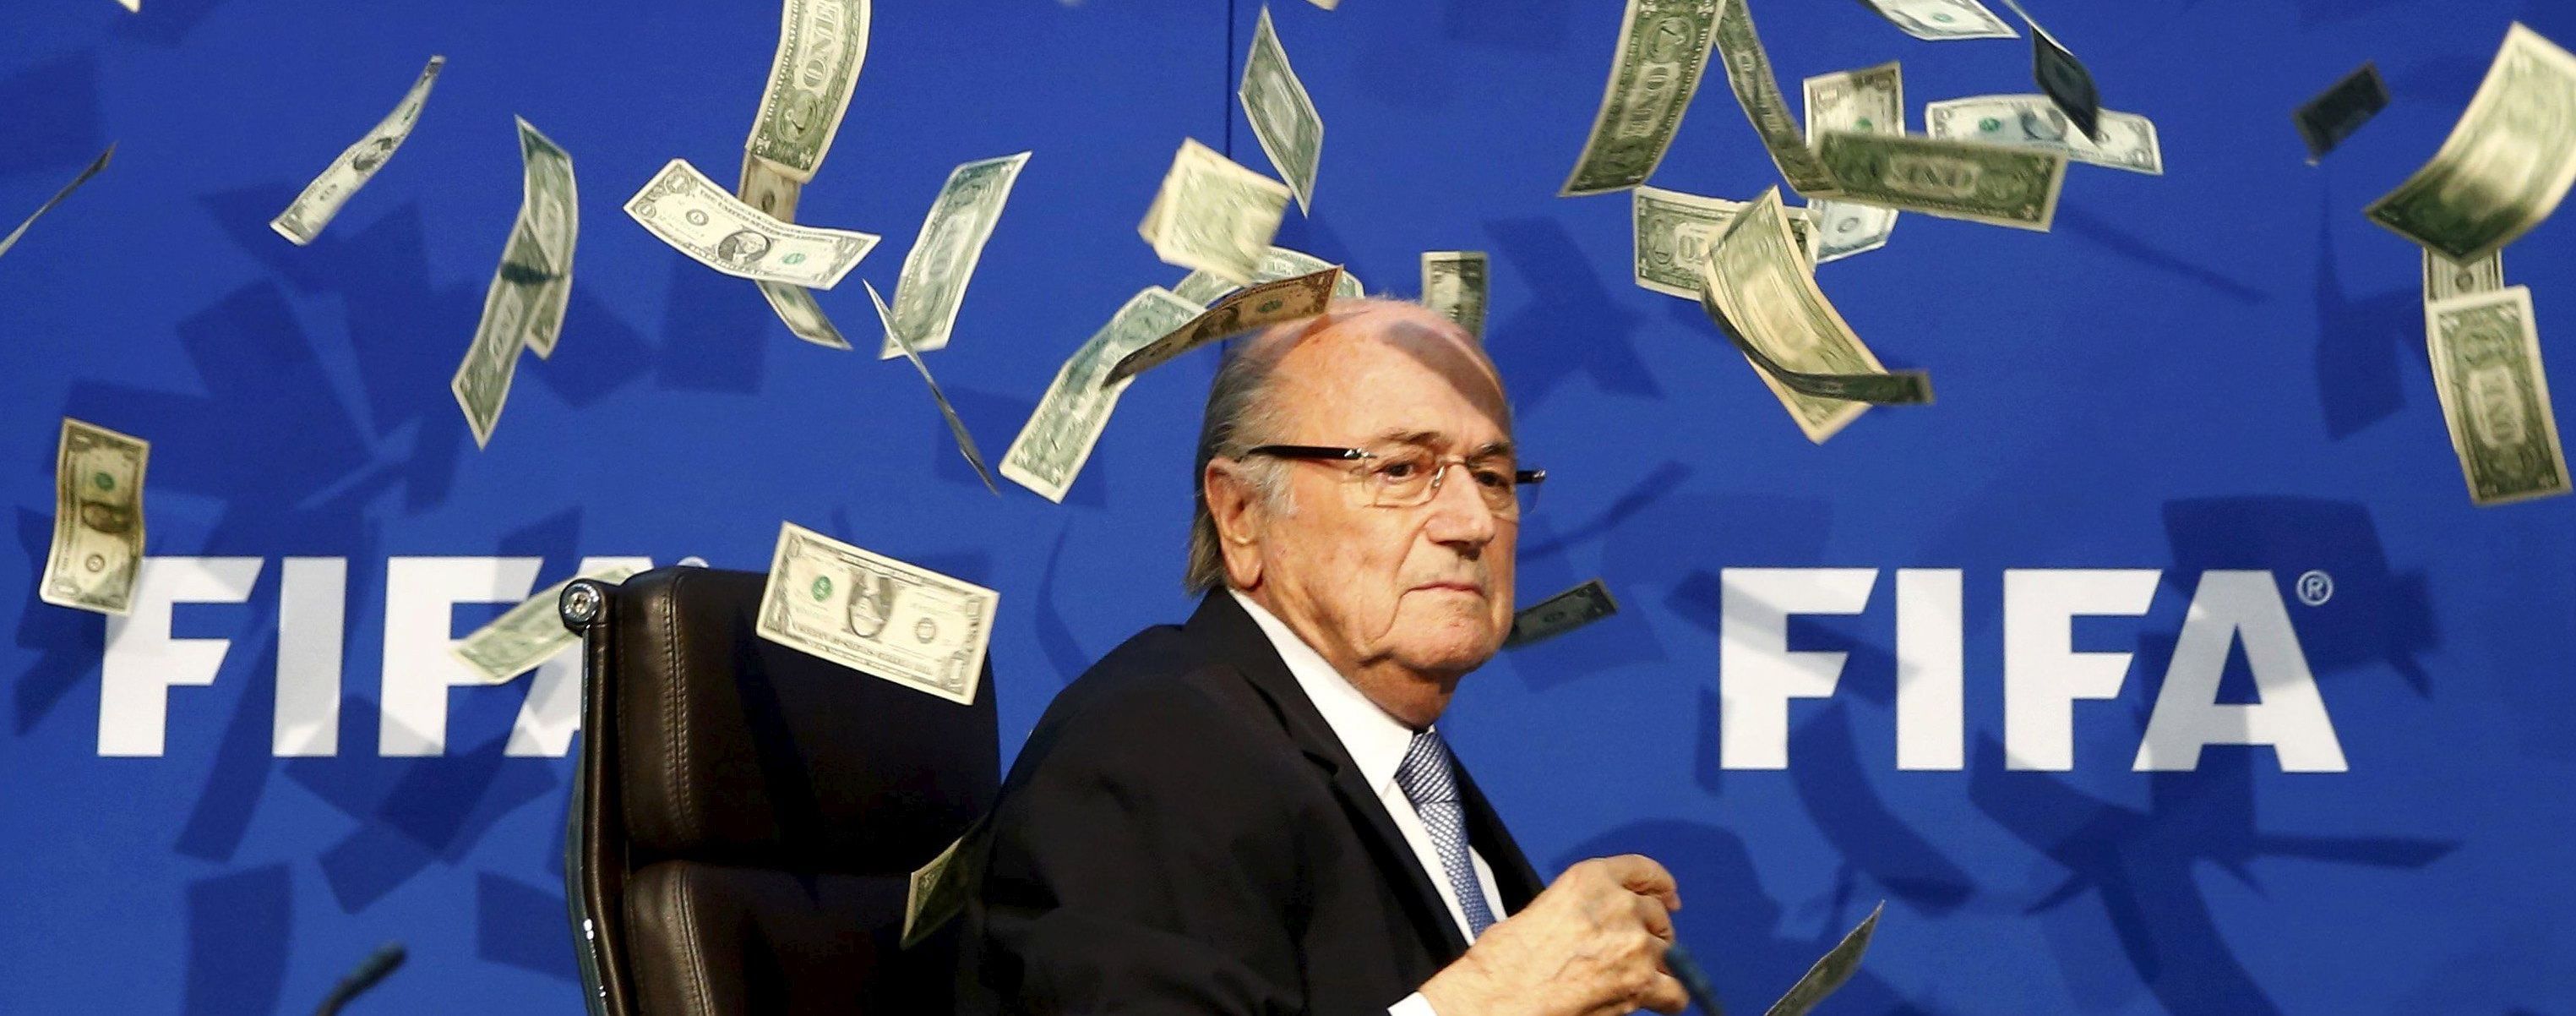 ЗМІ: ФІФА не виявила корупції у справі Блаттера-Платіні